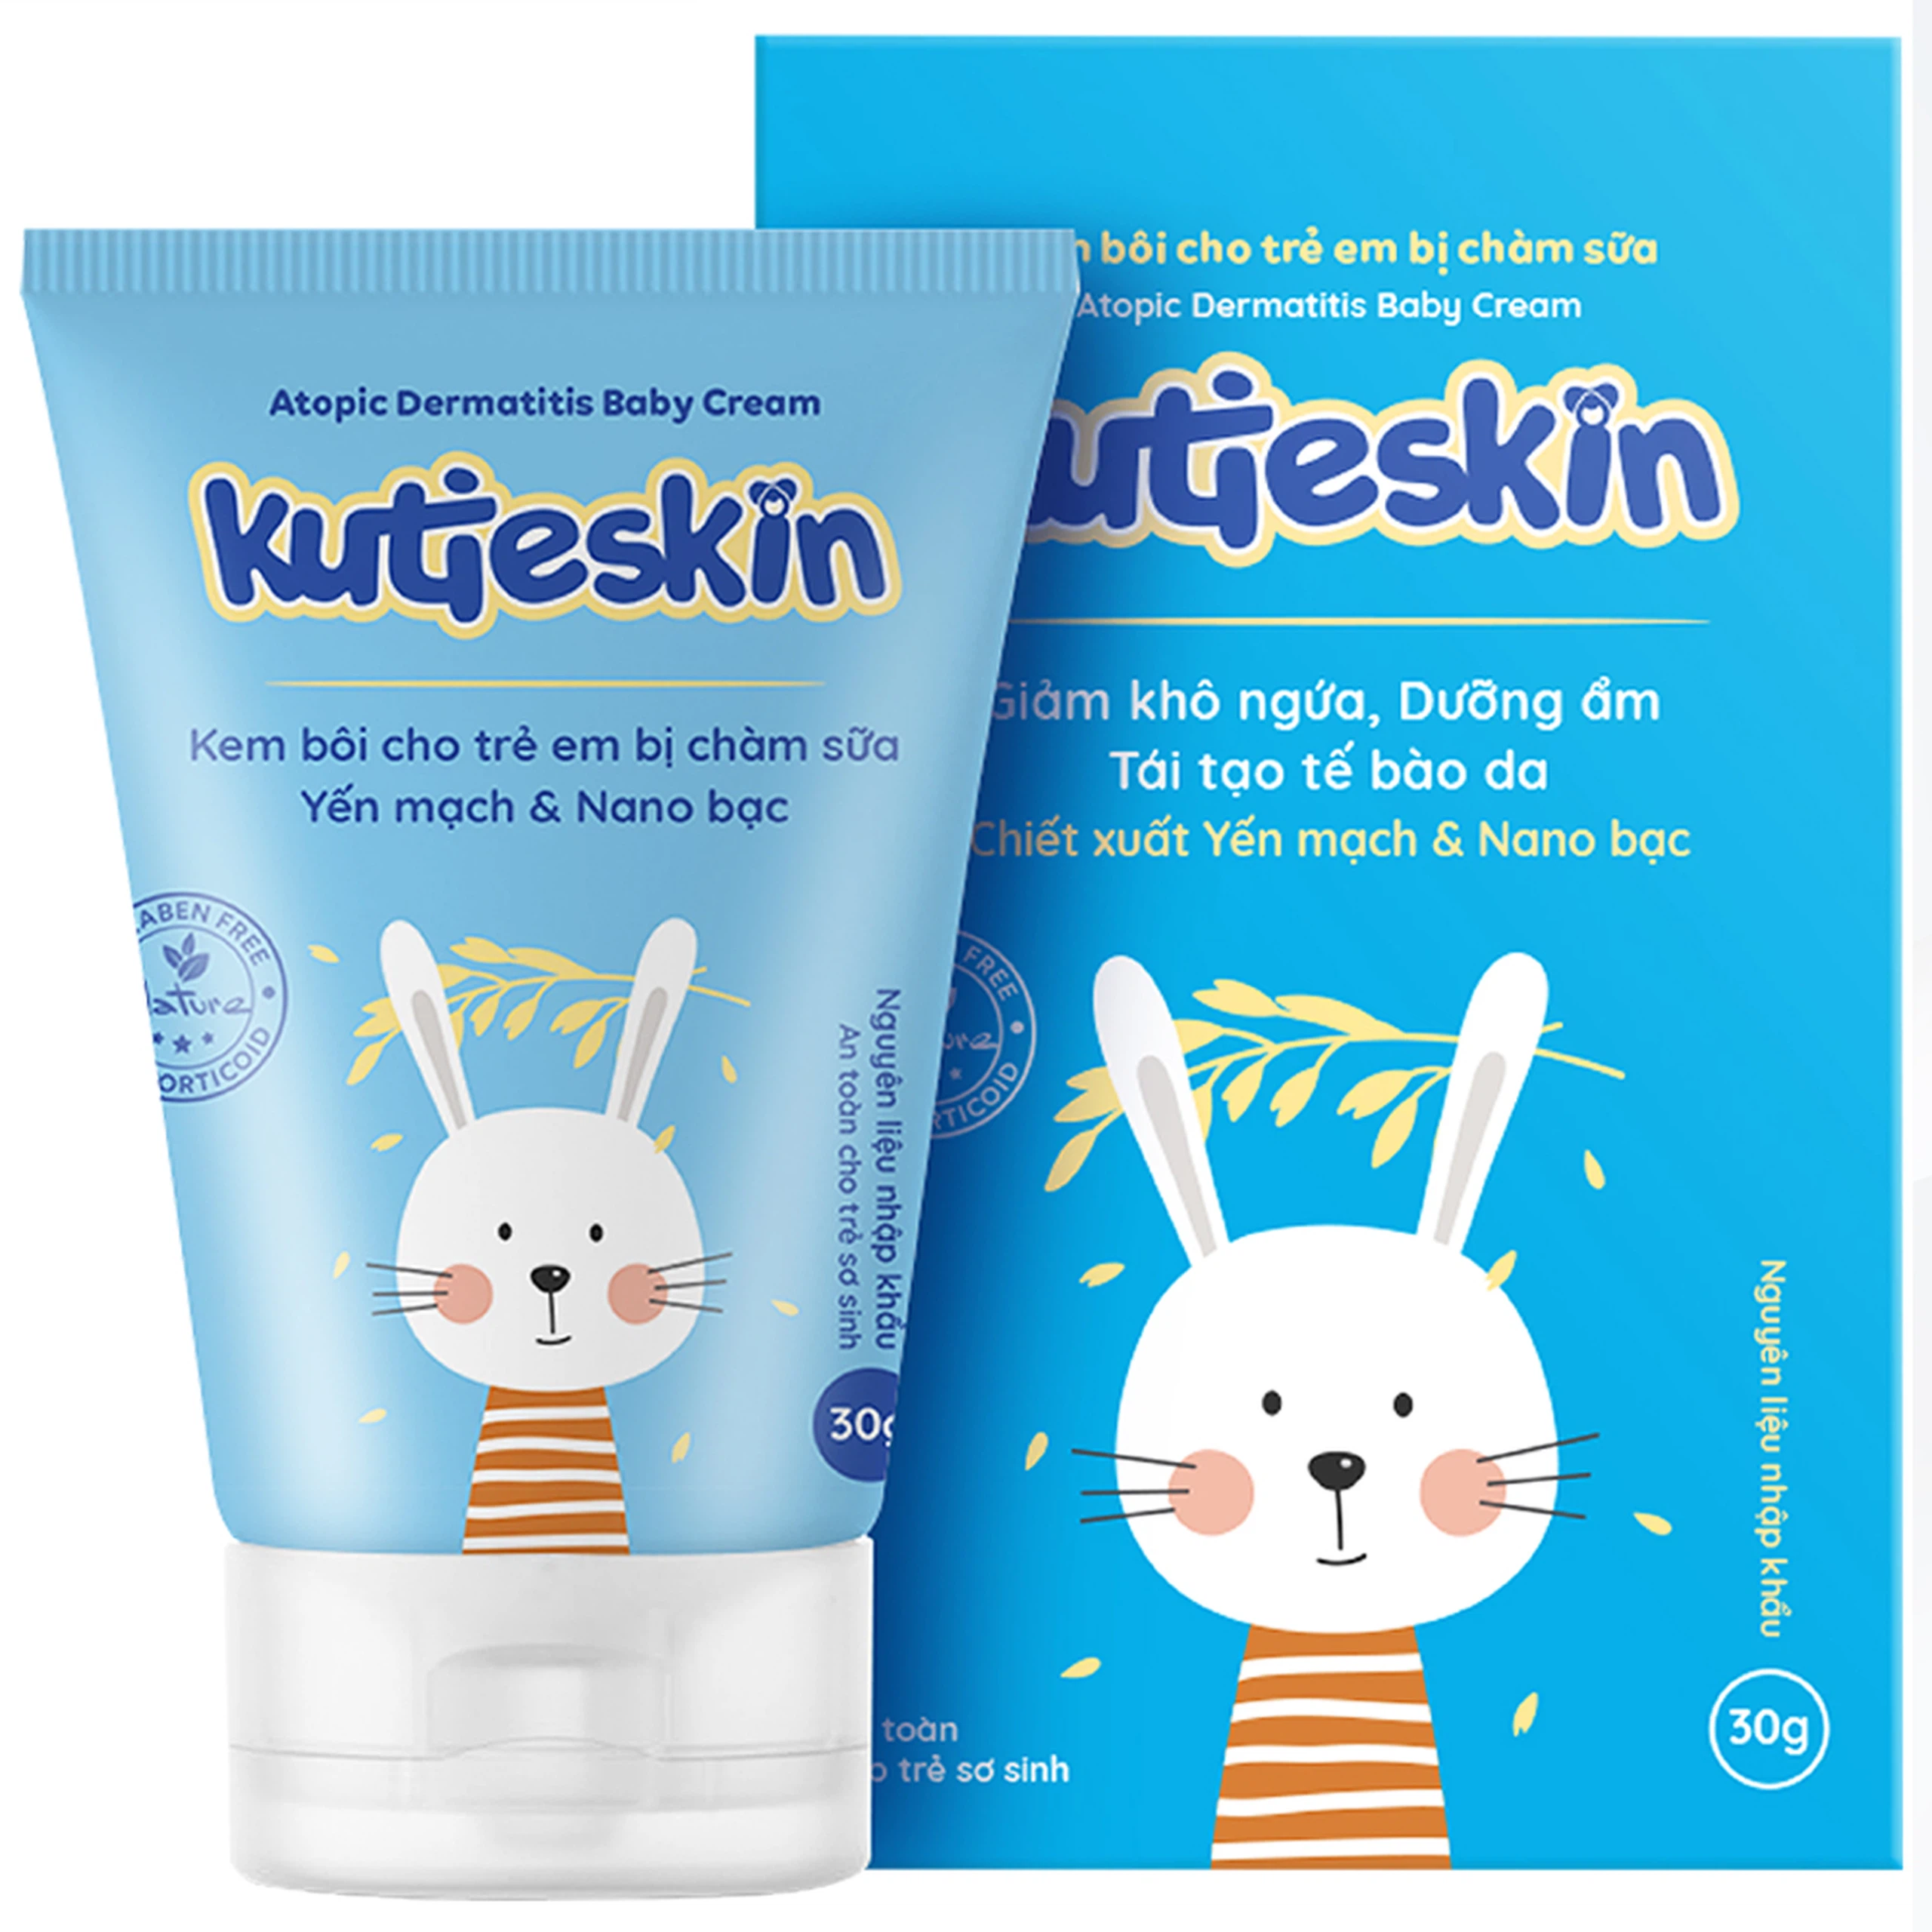 Kem bôi cho trẻ em bị chàm sữa Kutieskin giảm ngứa, kháng viêm, cải thiện bong tróc da (30g)